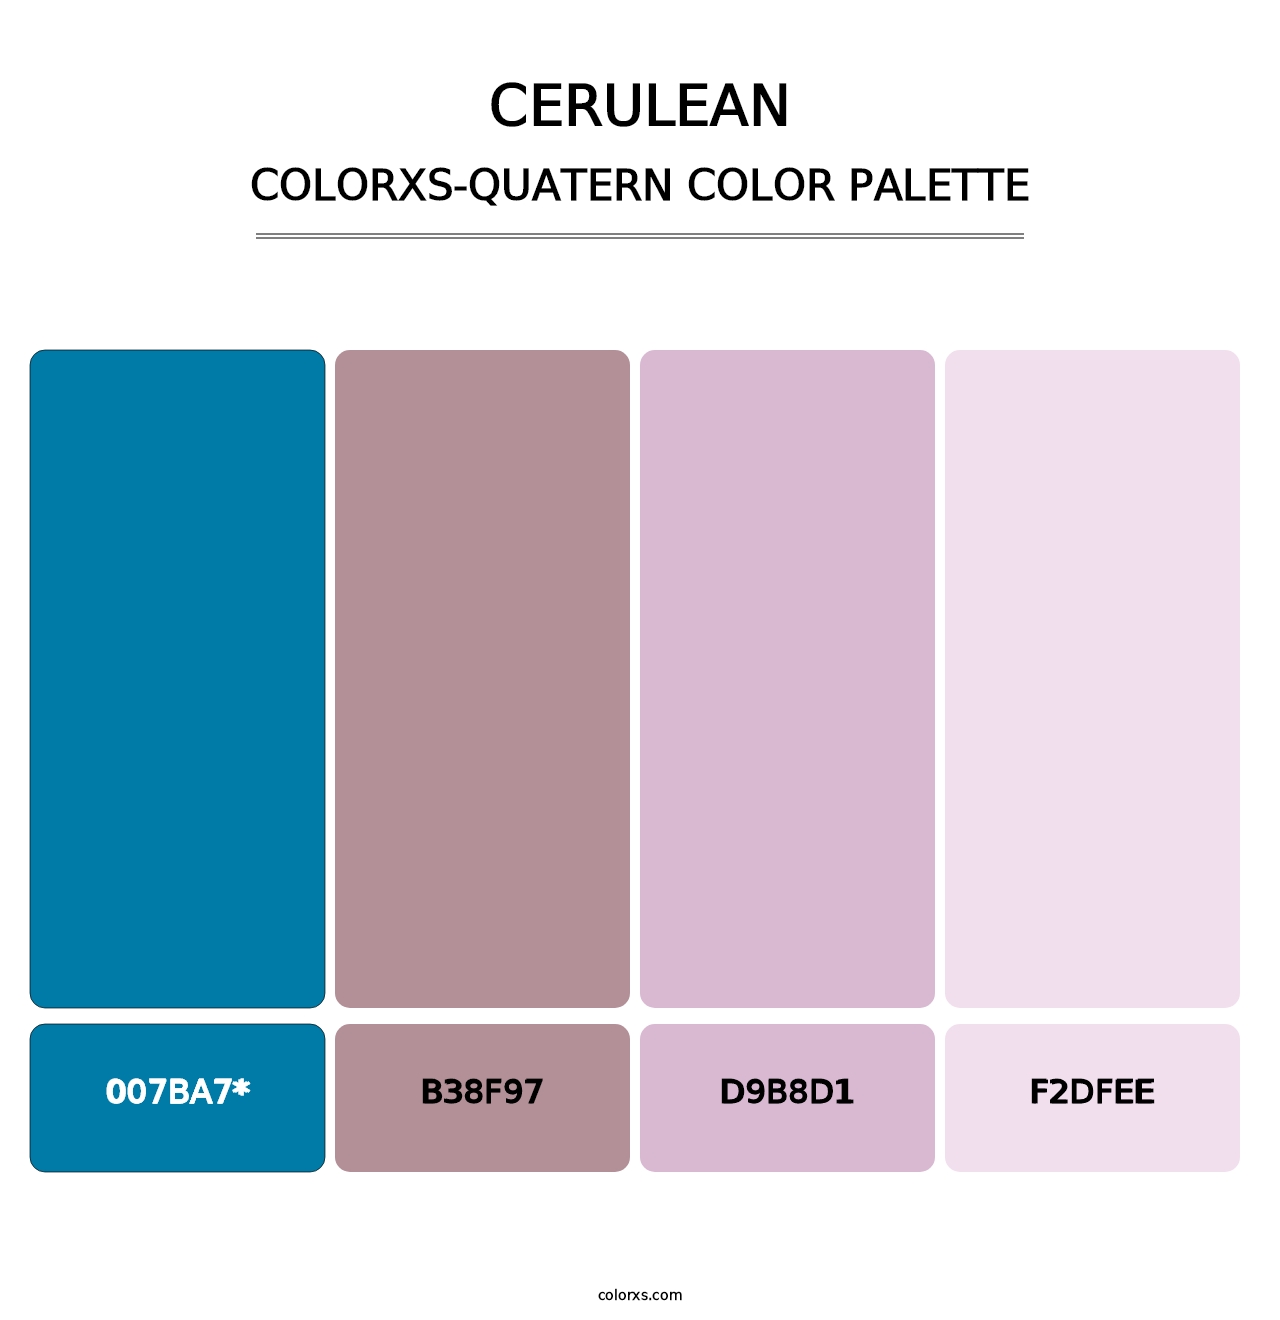 Cerulean - Colorxs Quatern Palette